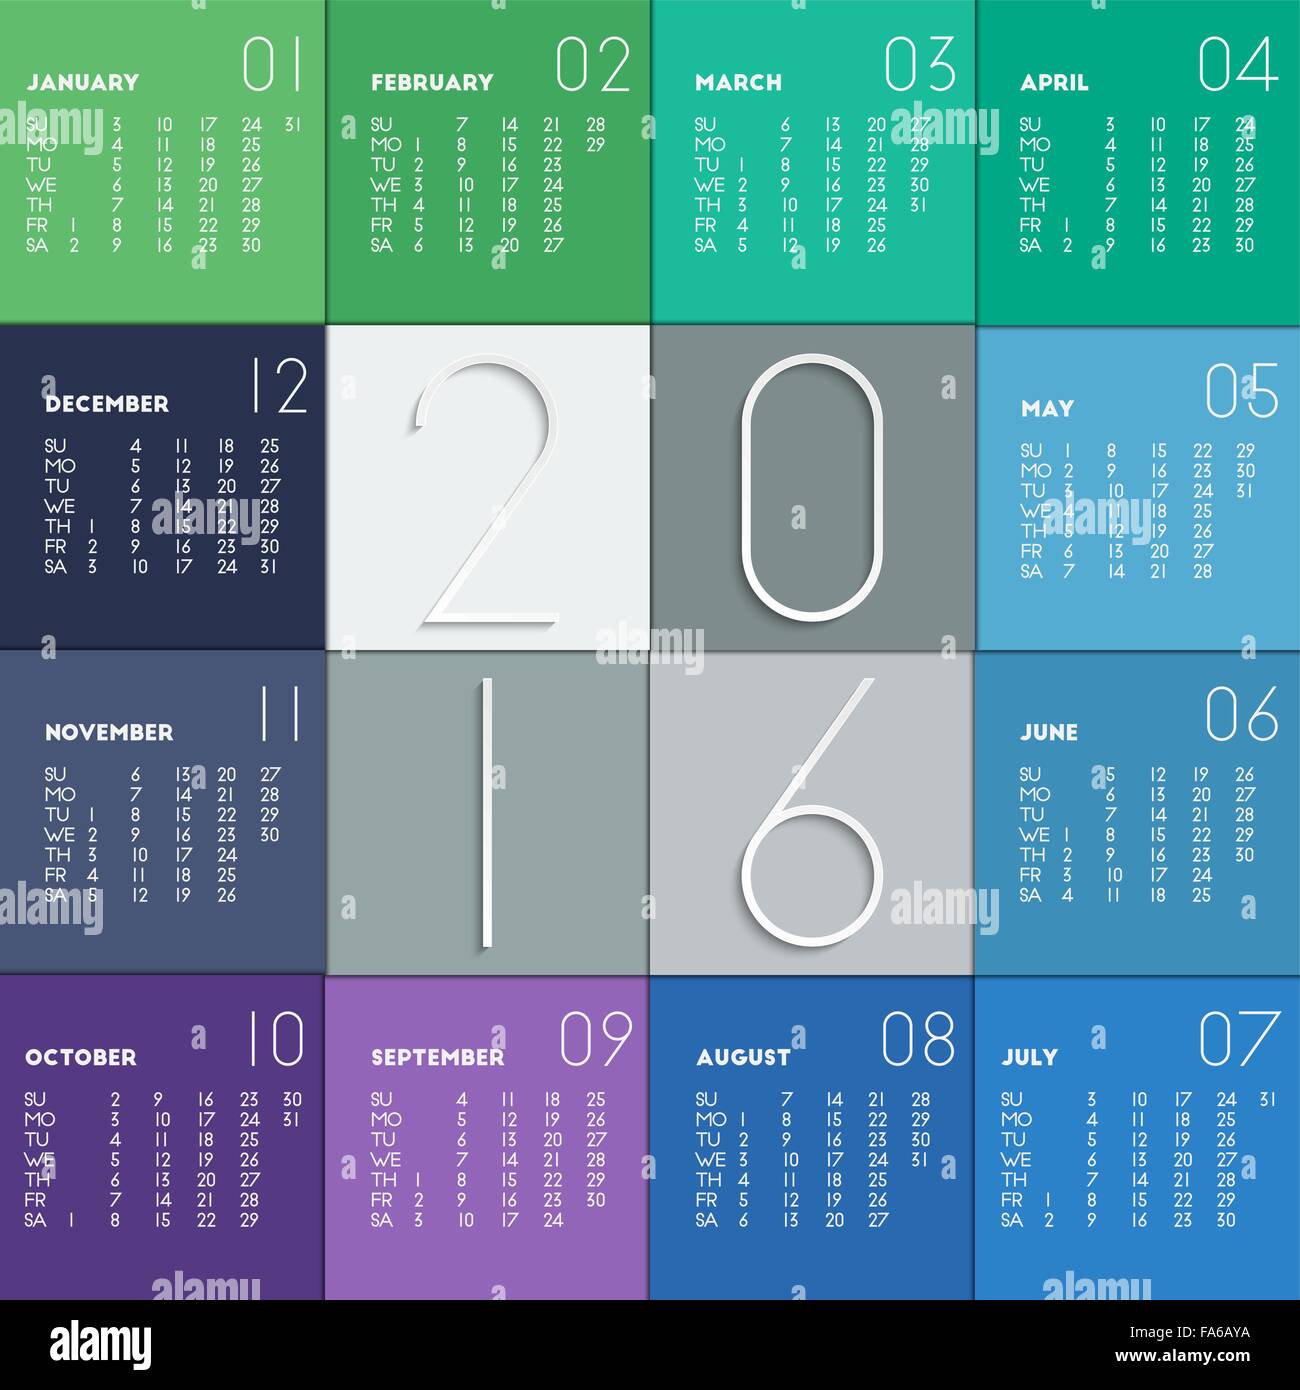 Blue Kente 2016 Weekly Calendar: 2016 week by week calendar with a